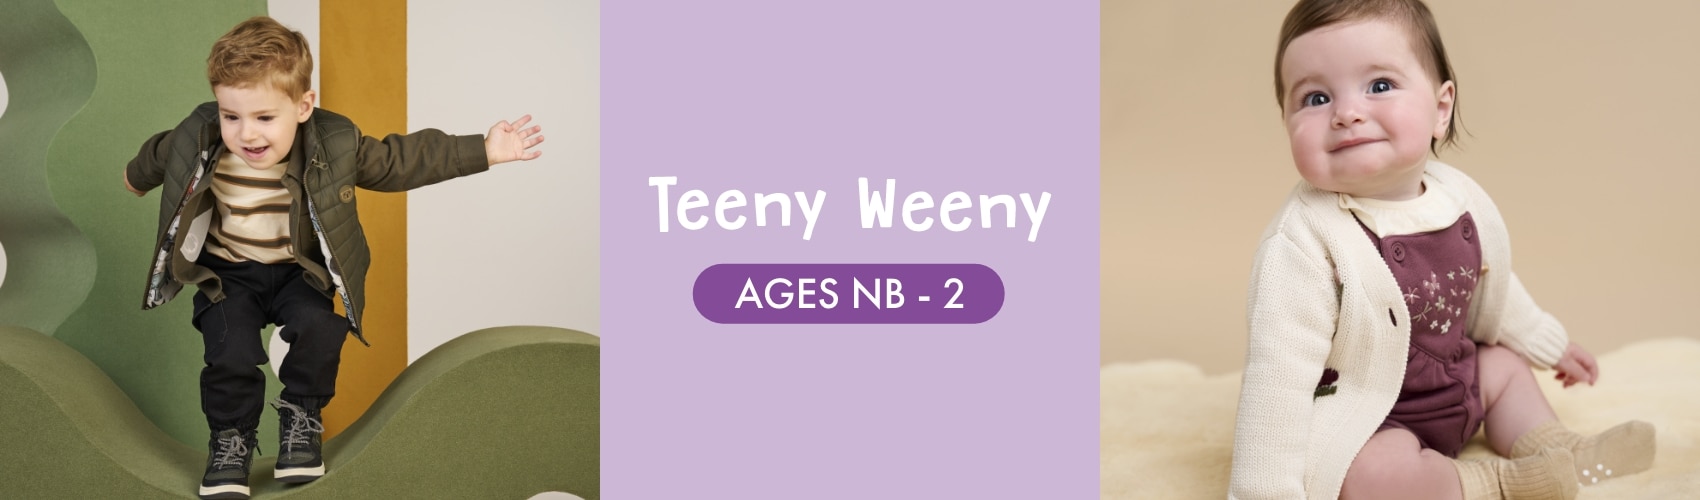 Teeny Weeny 